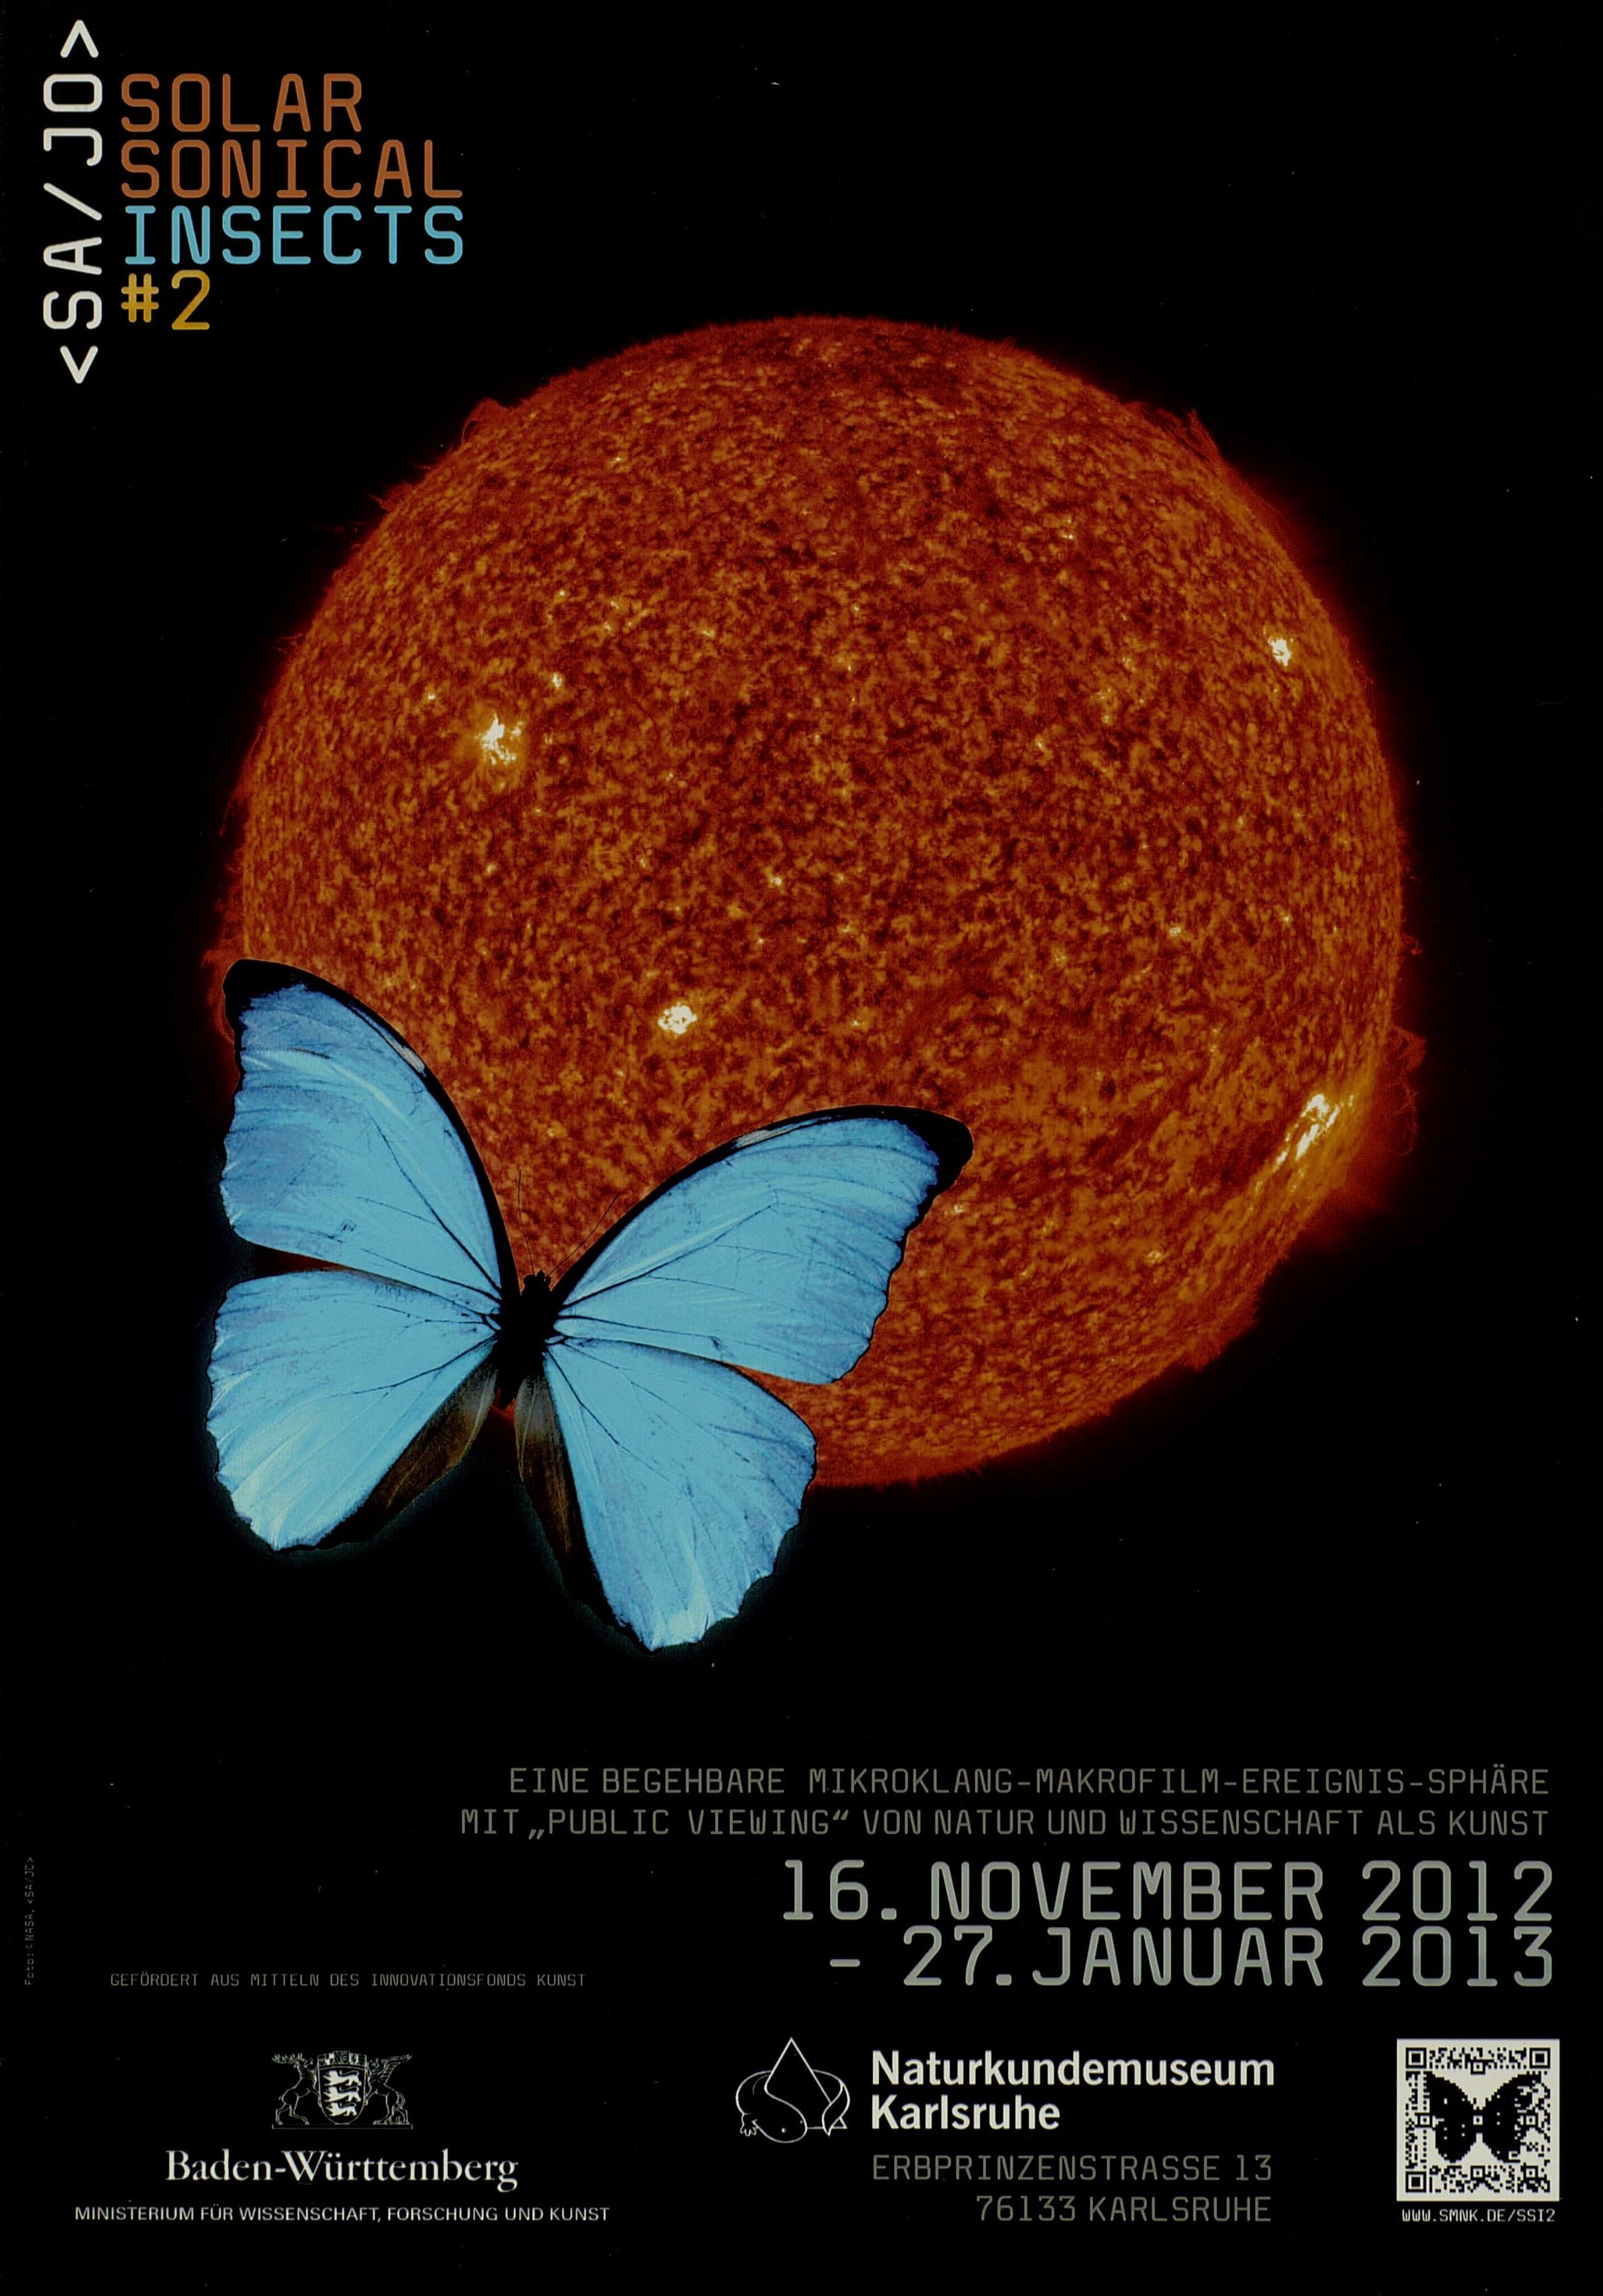 SolarSonical Insects #2 Plakat zur Ausstellung, Aufnahme der Sonne mit einem blauen Schmetterling links unten.